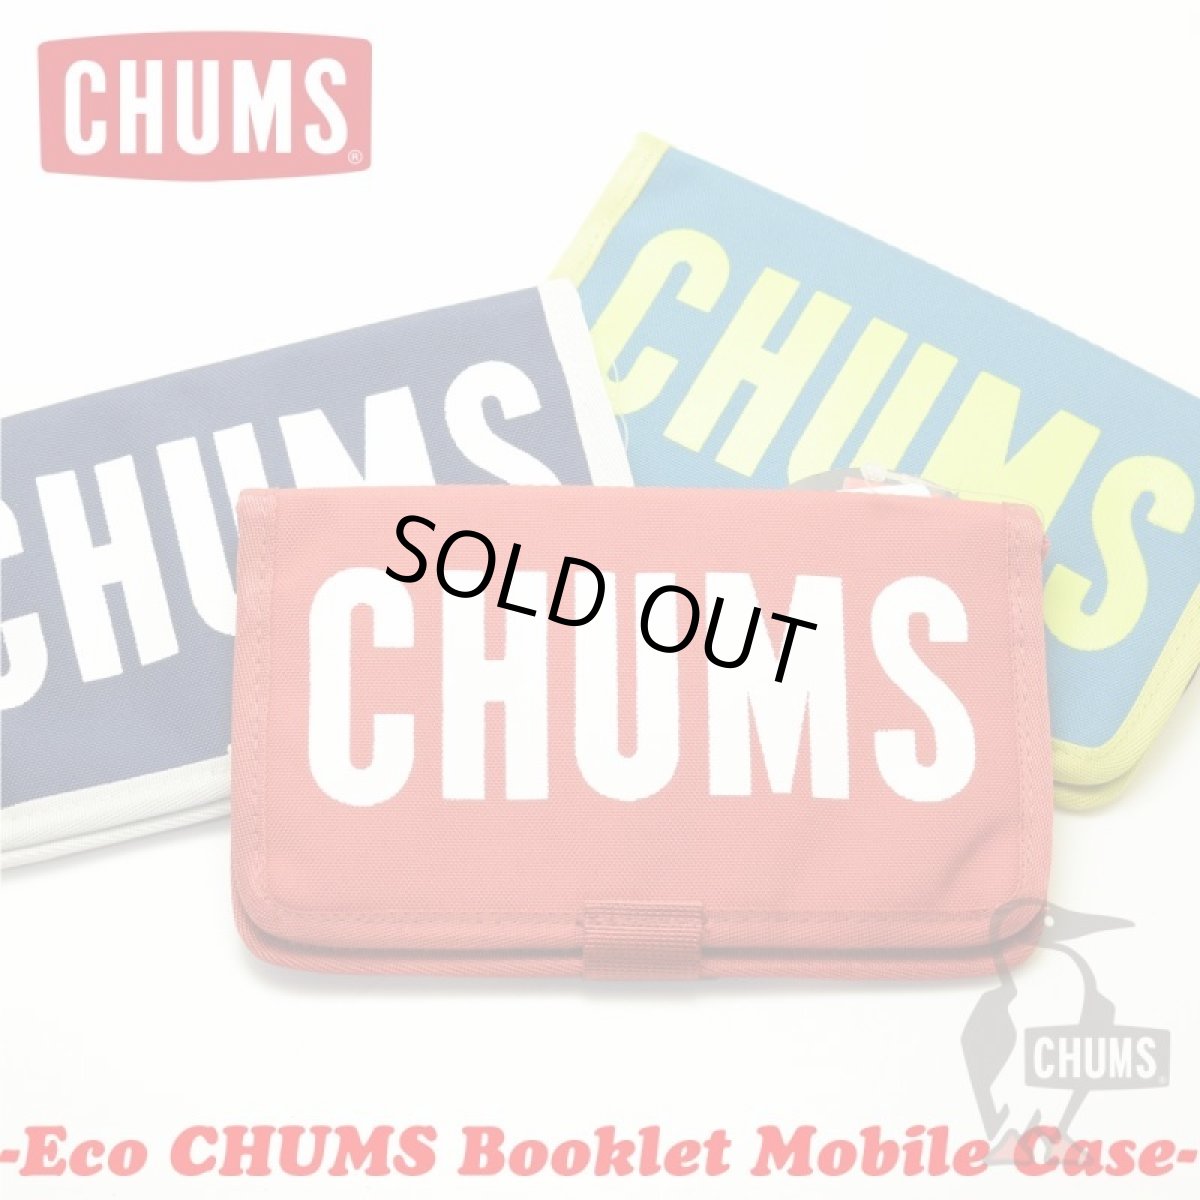 画像1: ネコポス対応 CHUMS Eco CHUMS Booklet Mobile Case エコチャムスブックレットケース CHUMS チャムス バック 財布 コインケース トートバック ショルダー リュック メンズ レディース 店舗 (1)